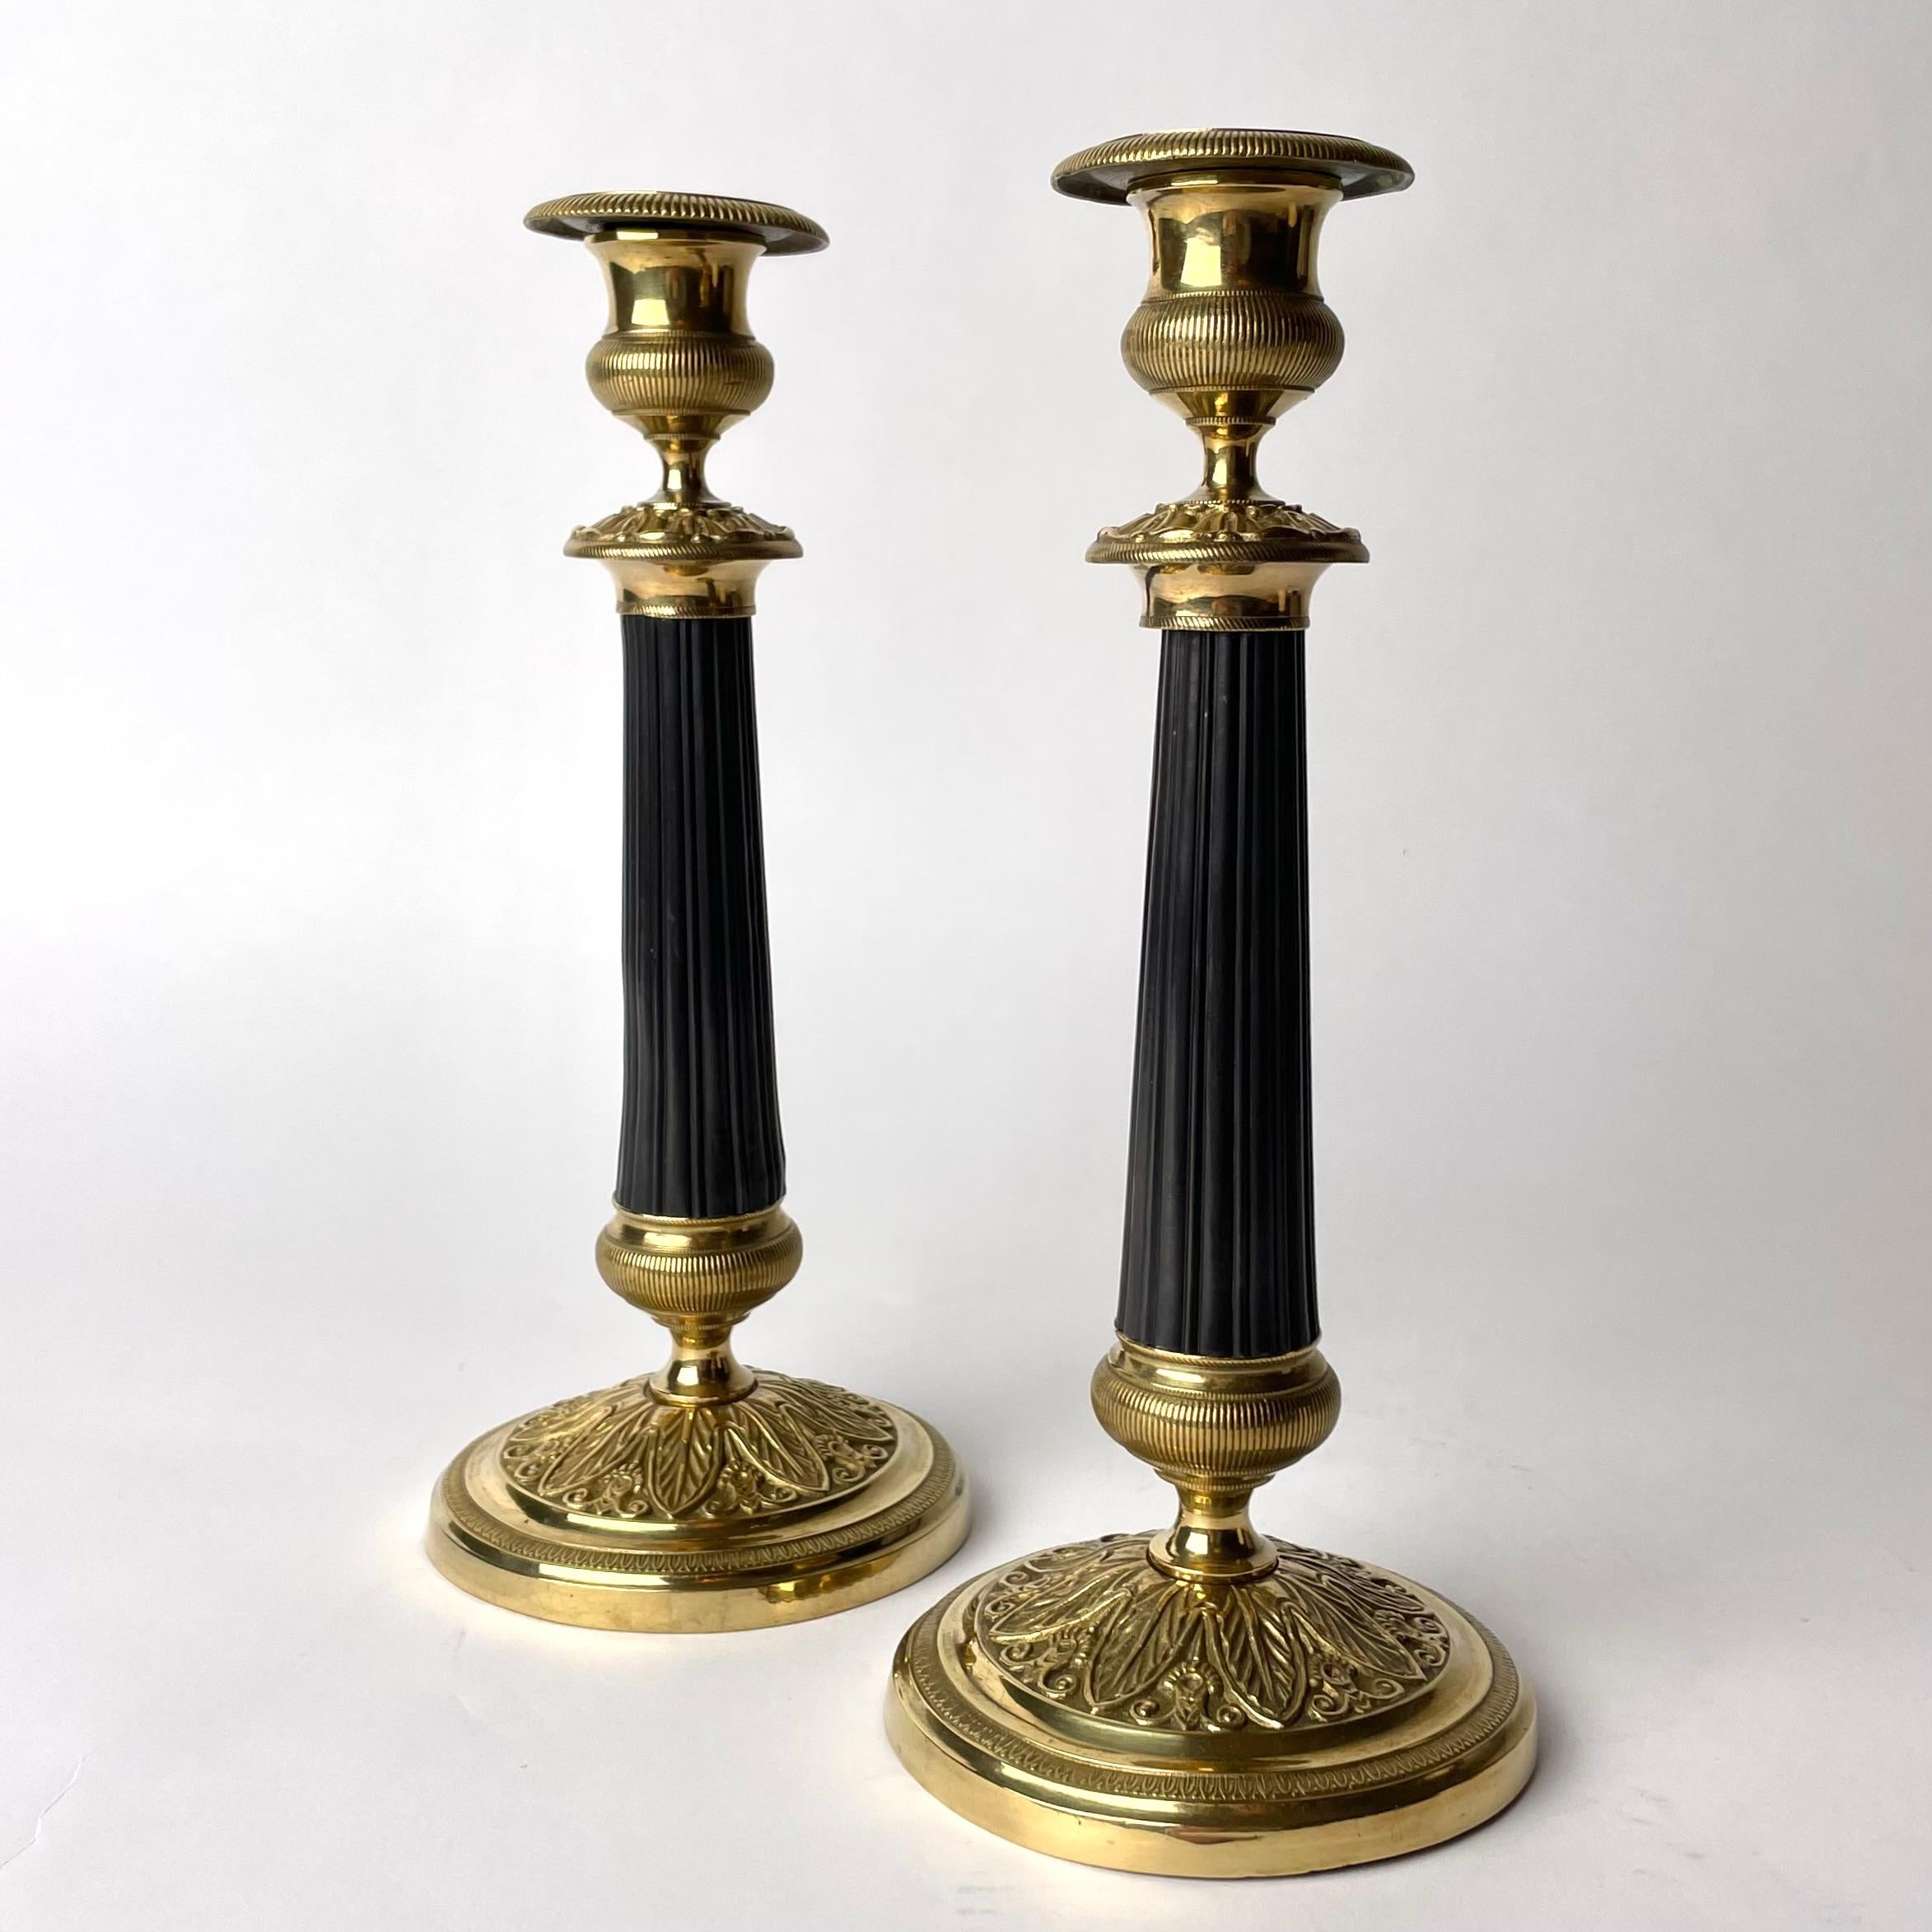 Elegantes Paar Kerzenleuchter aus vergoldeter und dunkel patinierter Bronze im Empire-Stil.  Hergestellt in Frankreich in den 1920er Jahren. Schön verziert mit Blattornamenten und mit einer dunkel patinierten Säule in der Mitte des